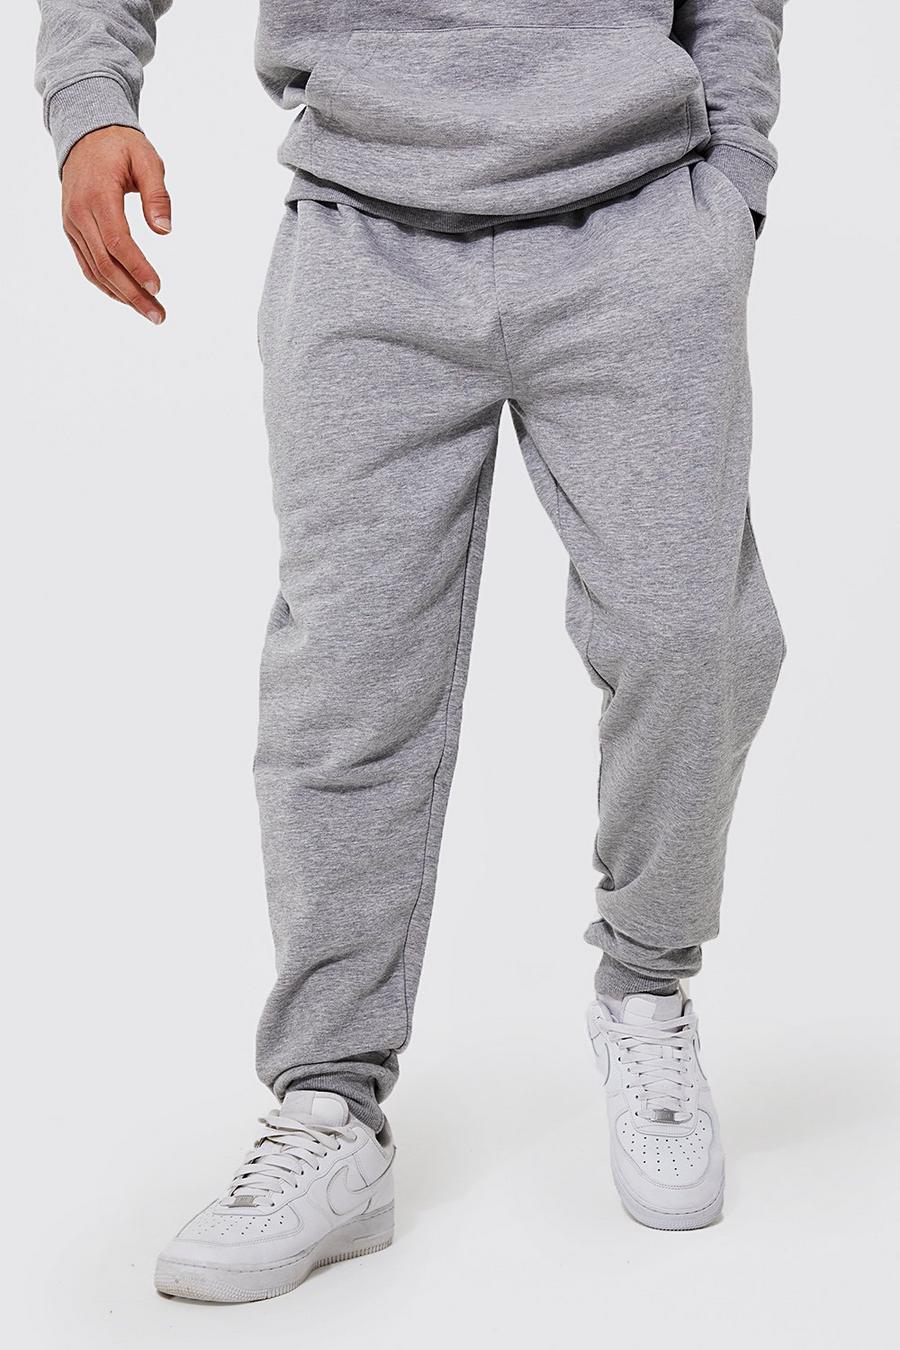 Grey grigio מכנסי ריצה בגזרה רגילה מבד משולב בכותנת REEL